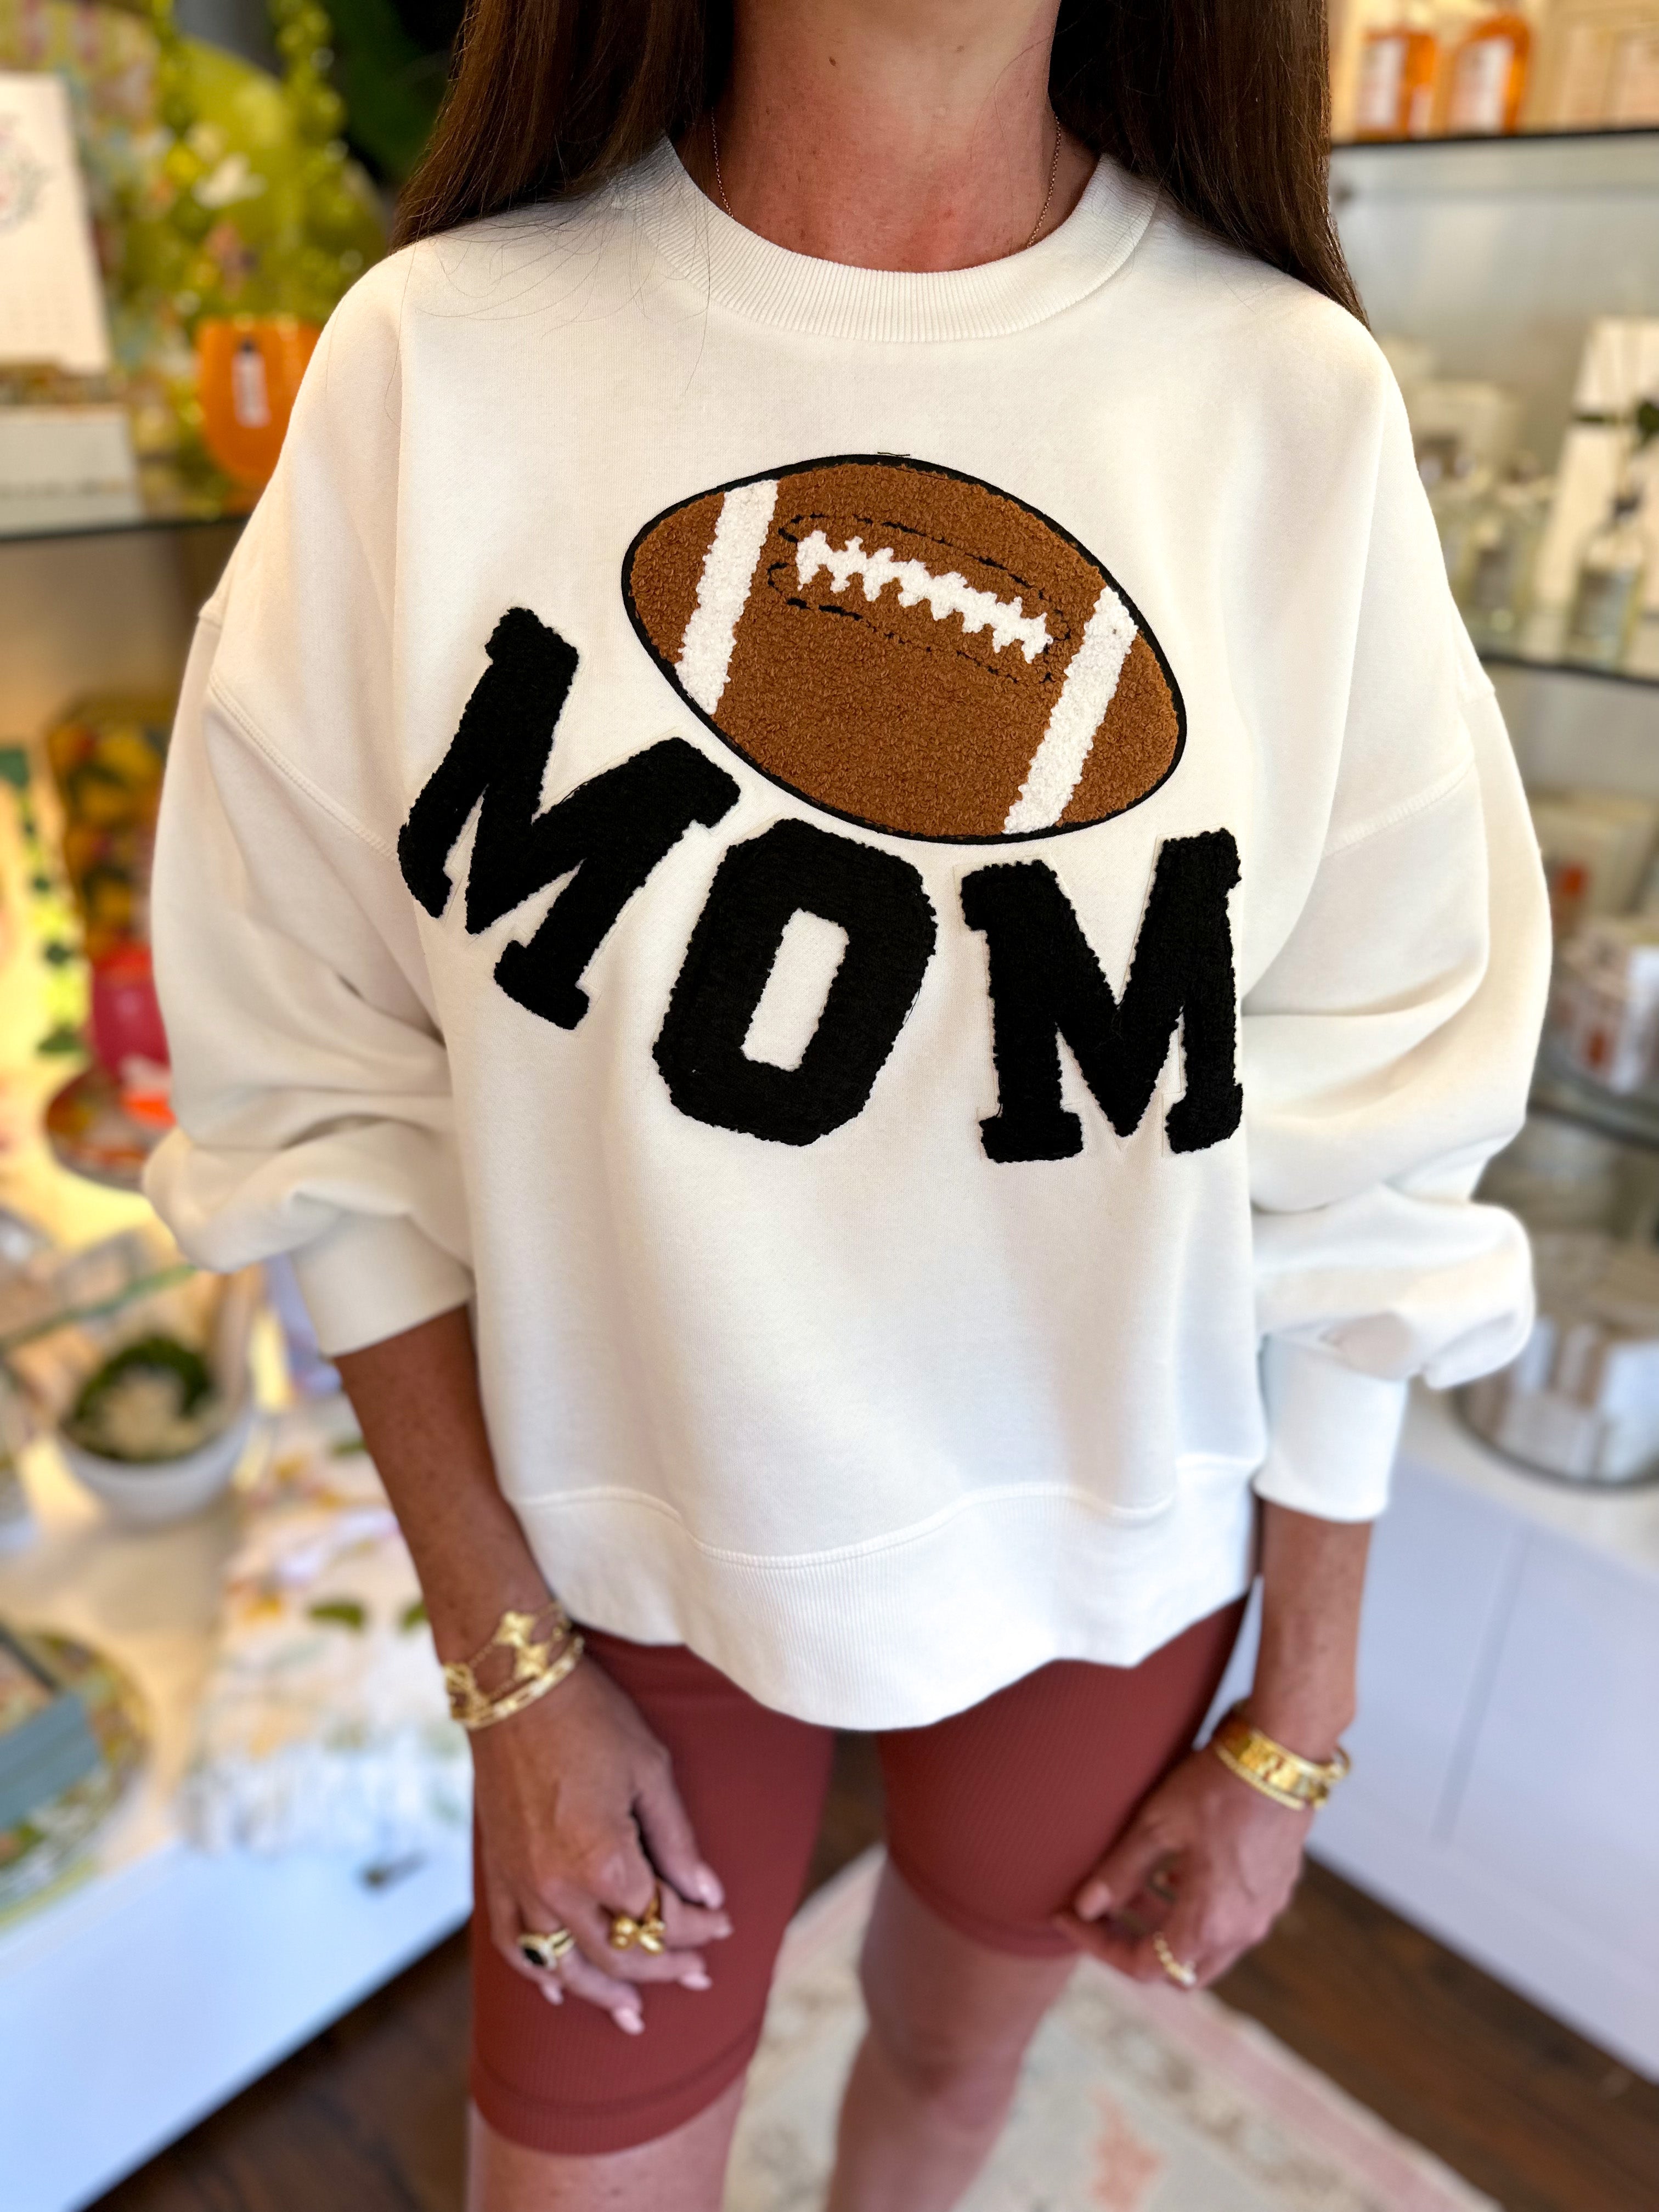 Football Mom Pullover